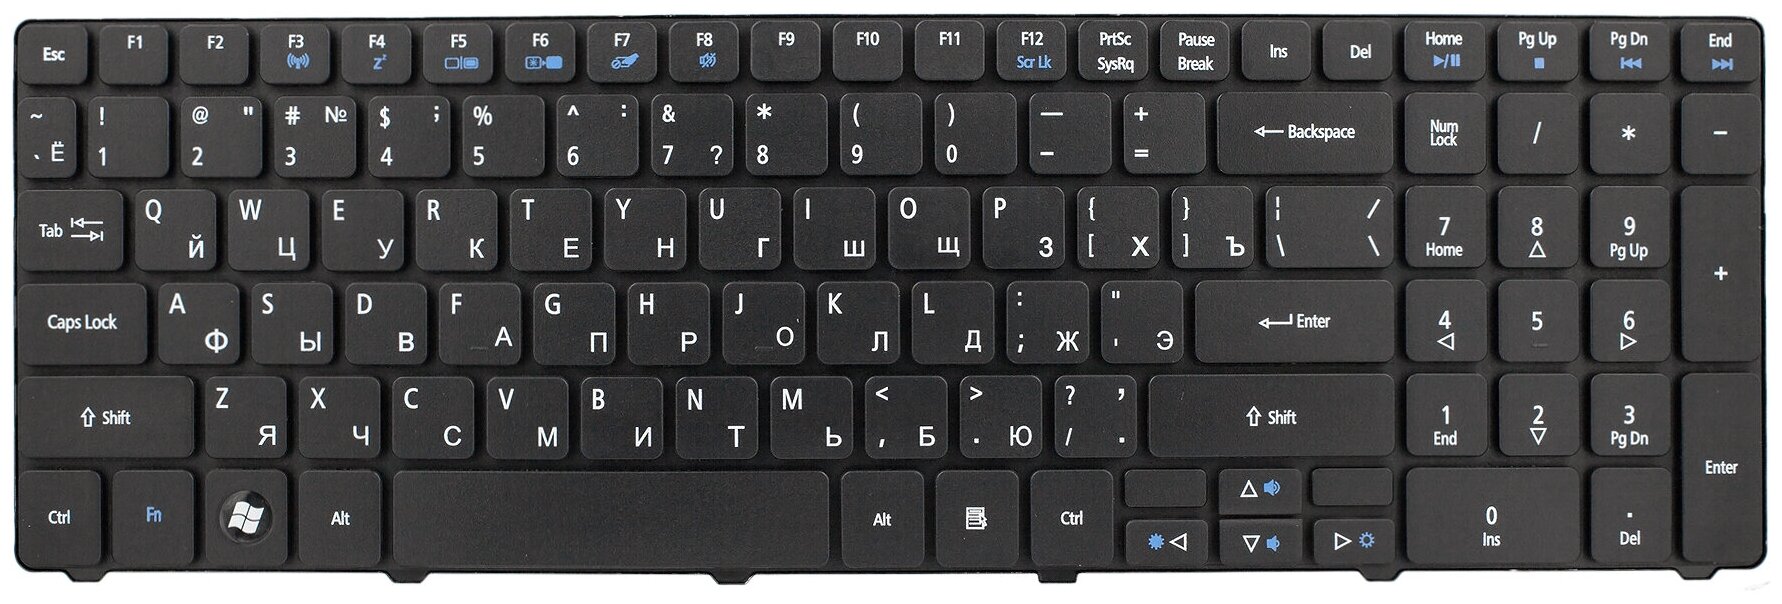 Клавиатура для ноутбука Acer Aspire 5750g / 5742g / 5560 / 5560g / 7750g - Черная